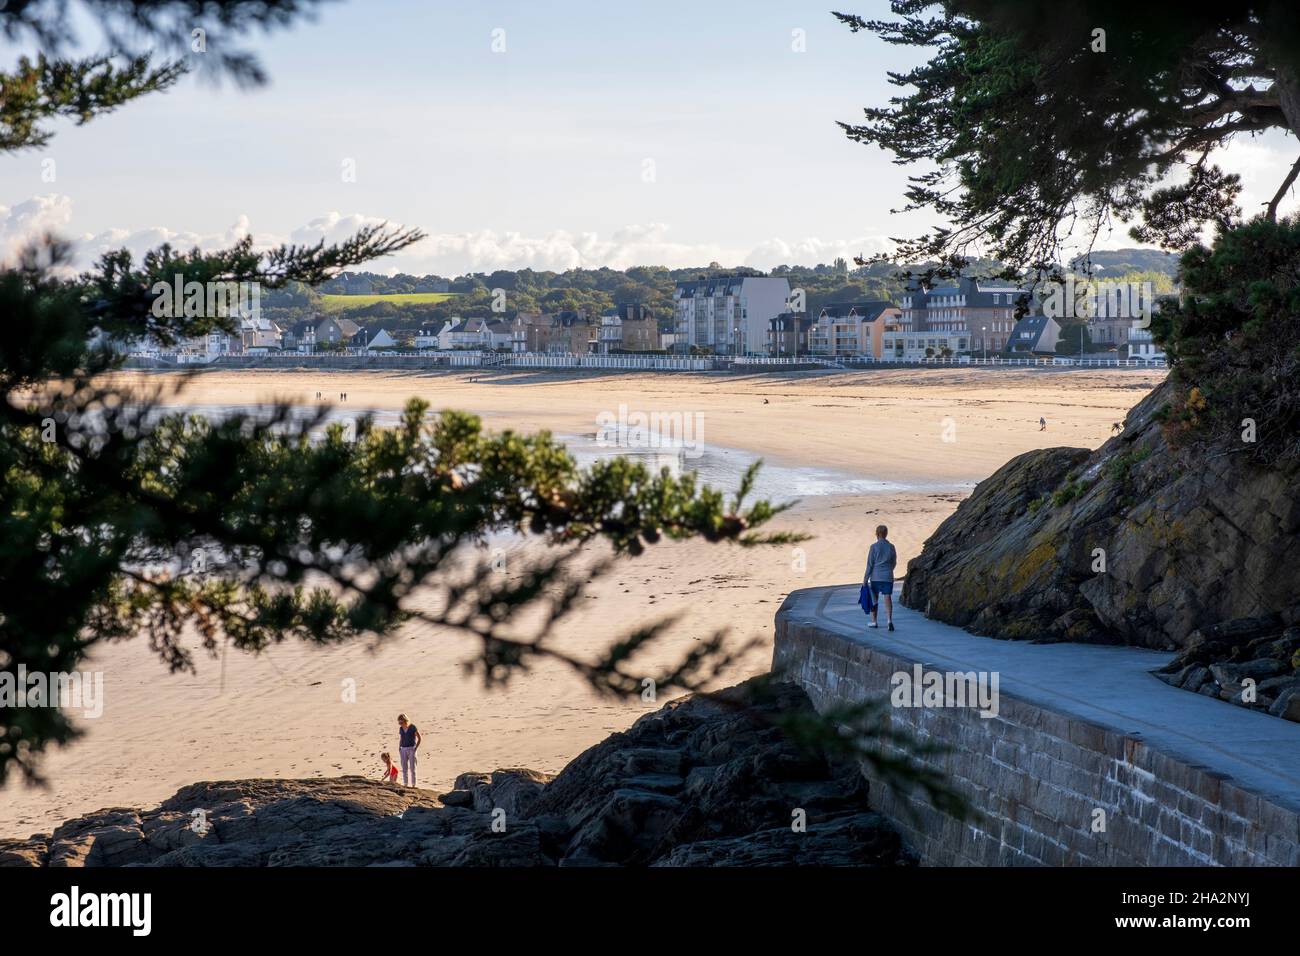 Saint-Cast-le-Guildo (Bretagna, Francia nord-occidentale): La zona costiera “Cote d’Emeraude”, camminatore su un sentiero e panoramica della spiaggia principale con buildi Foto Stock